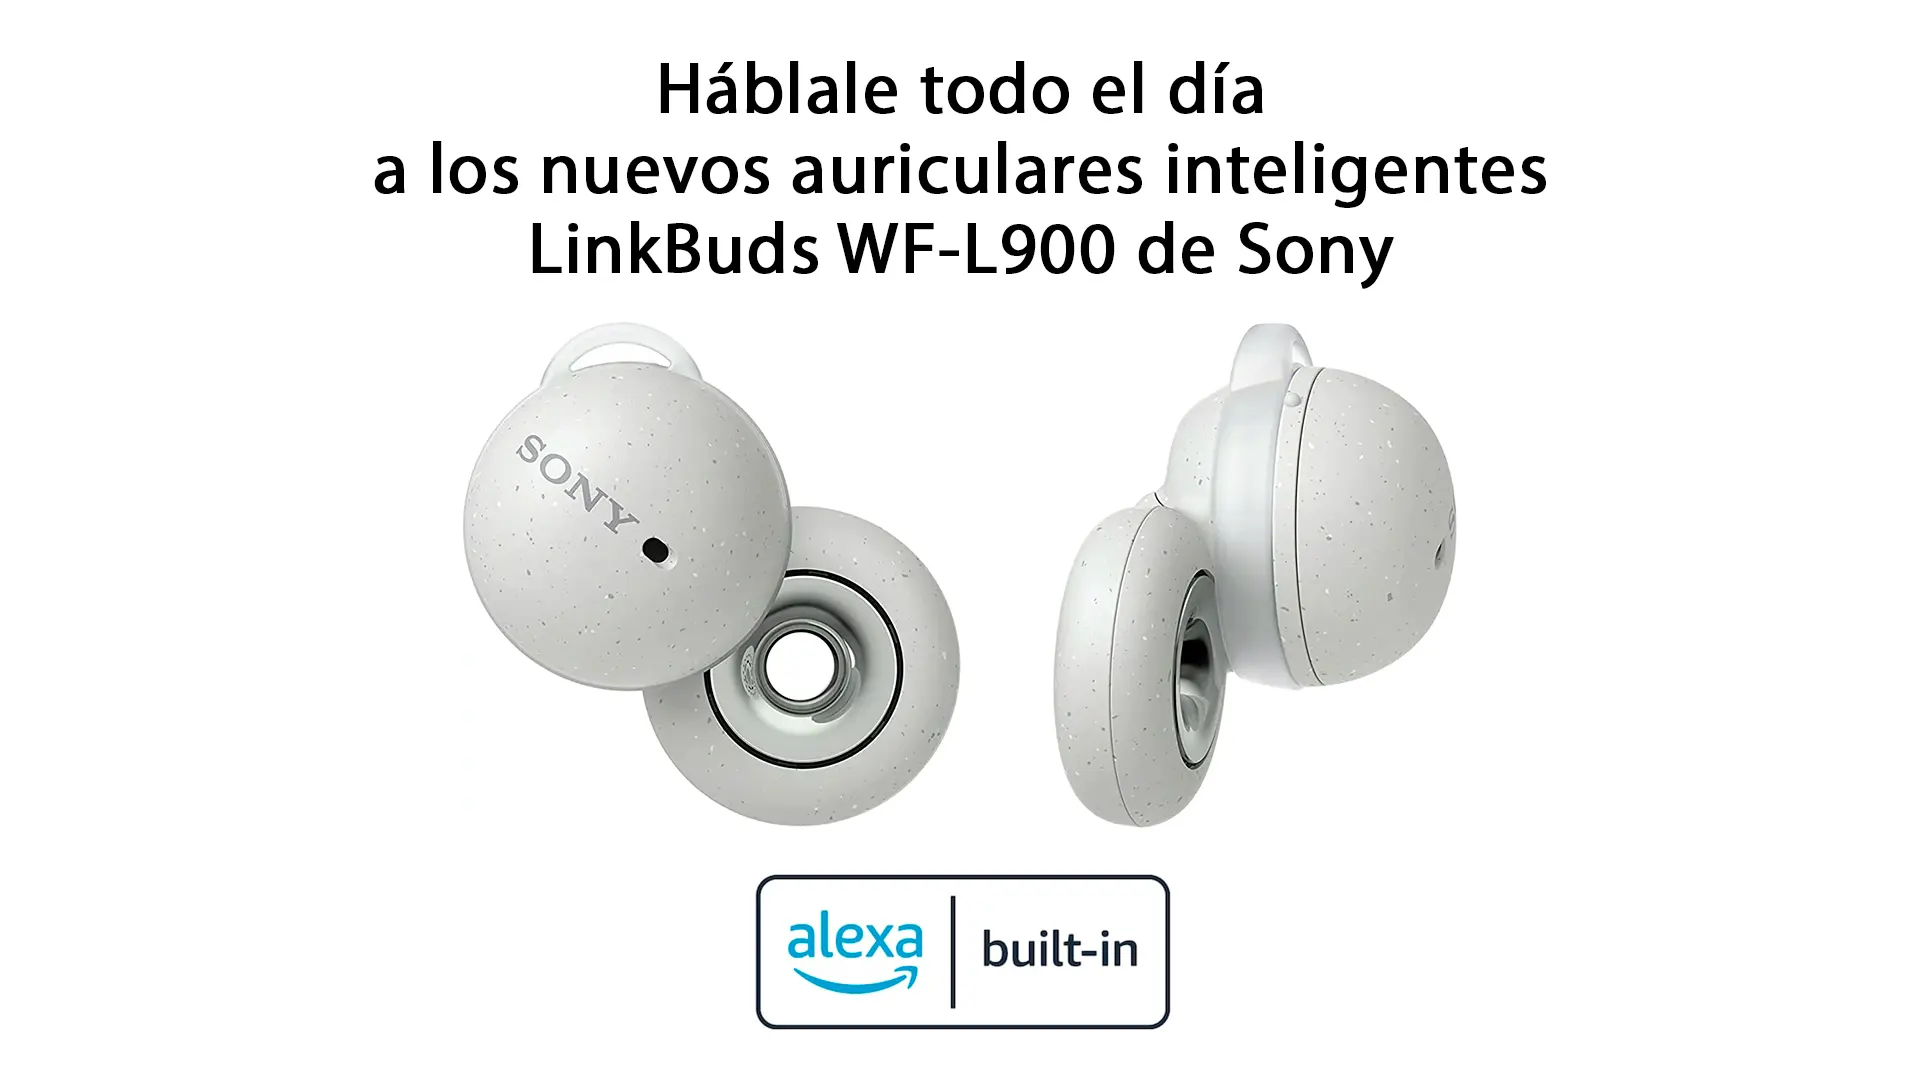 Ya tenemos los nuevos auriculares LinkBuds WF-L900 de Sony con Alexa